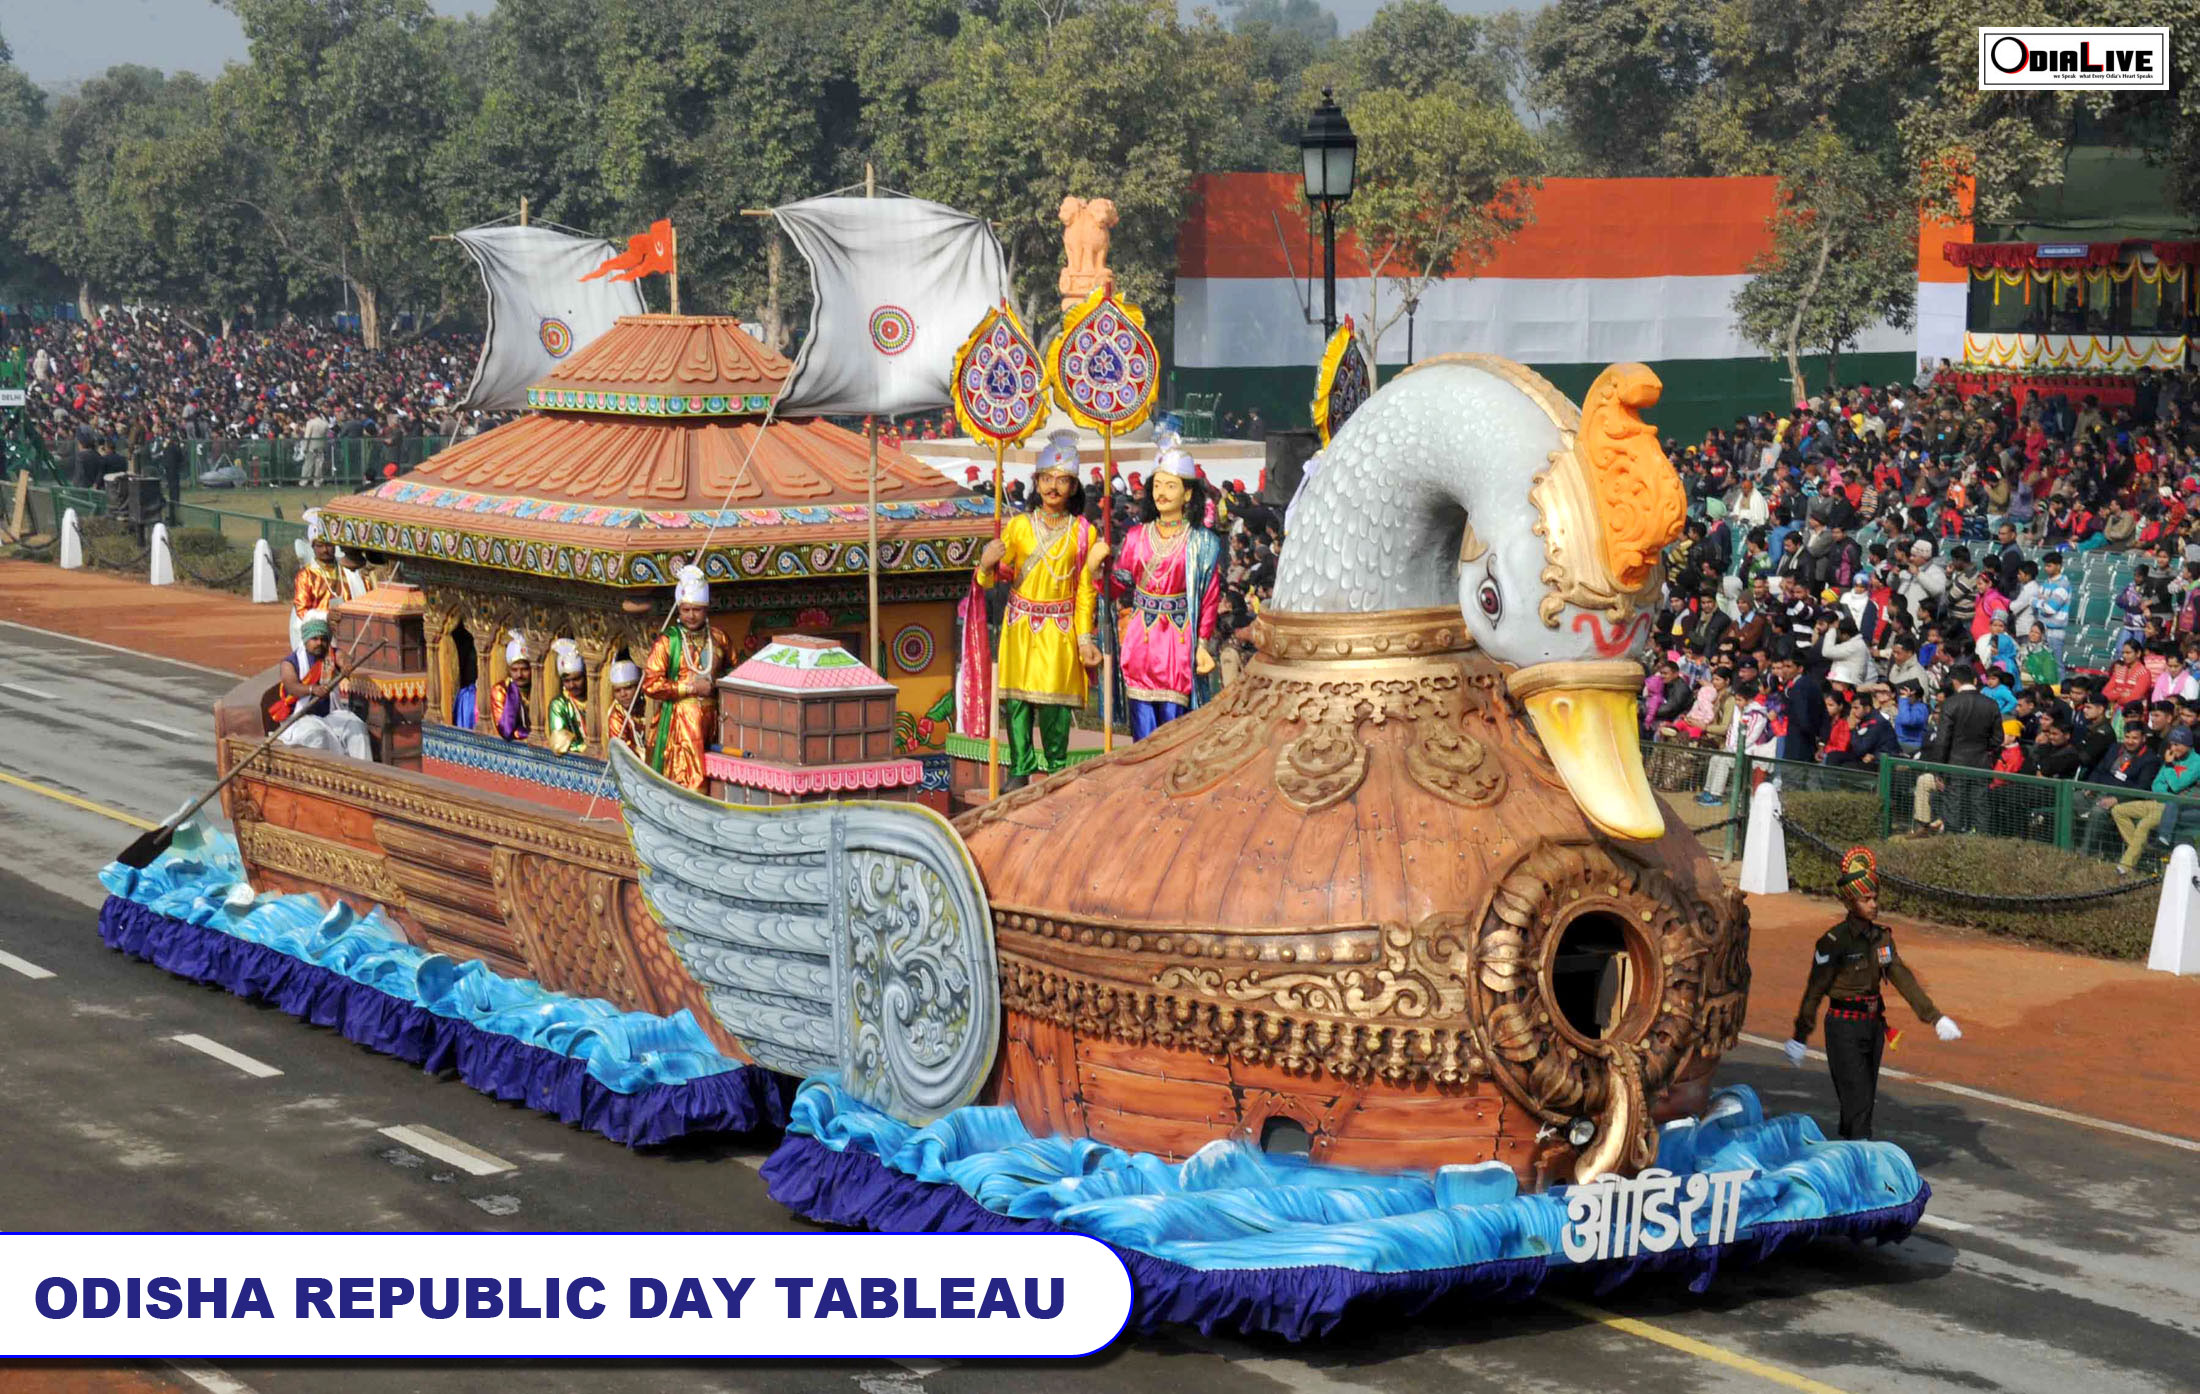 Odisha Tableau at Republic Day Parade at Rajpath